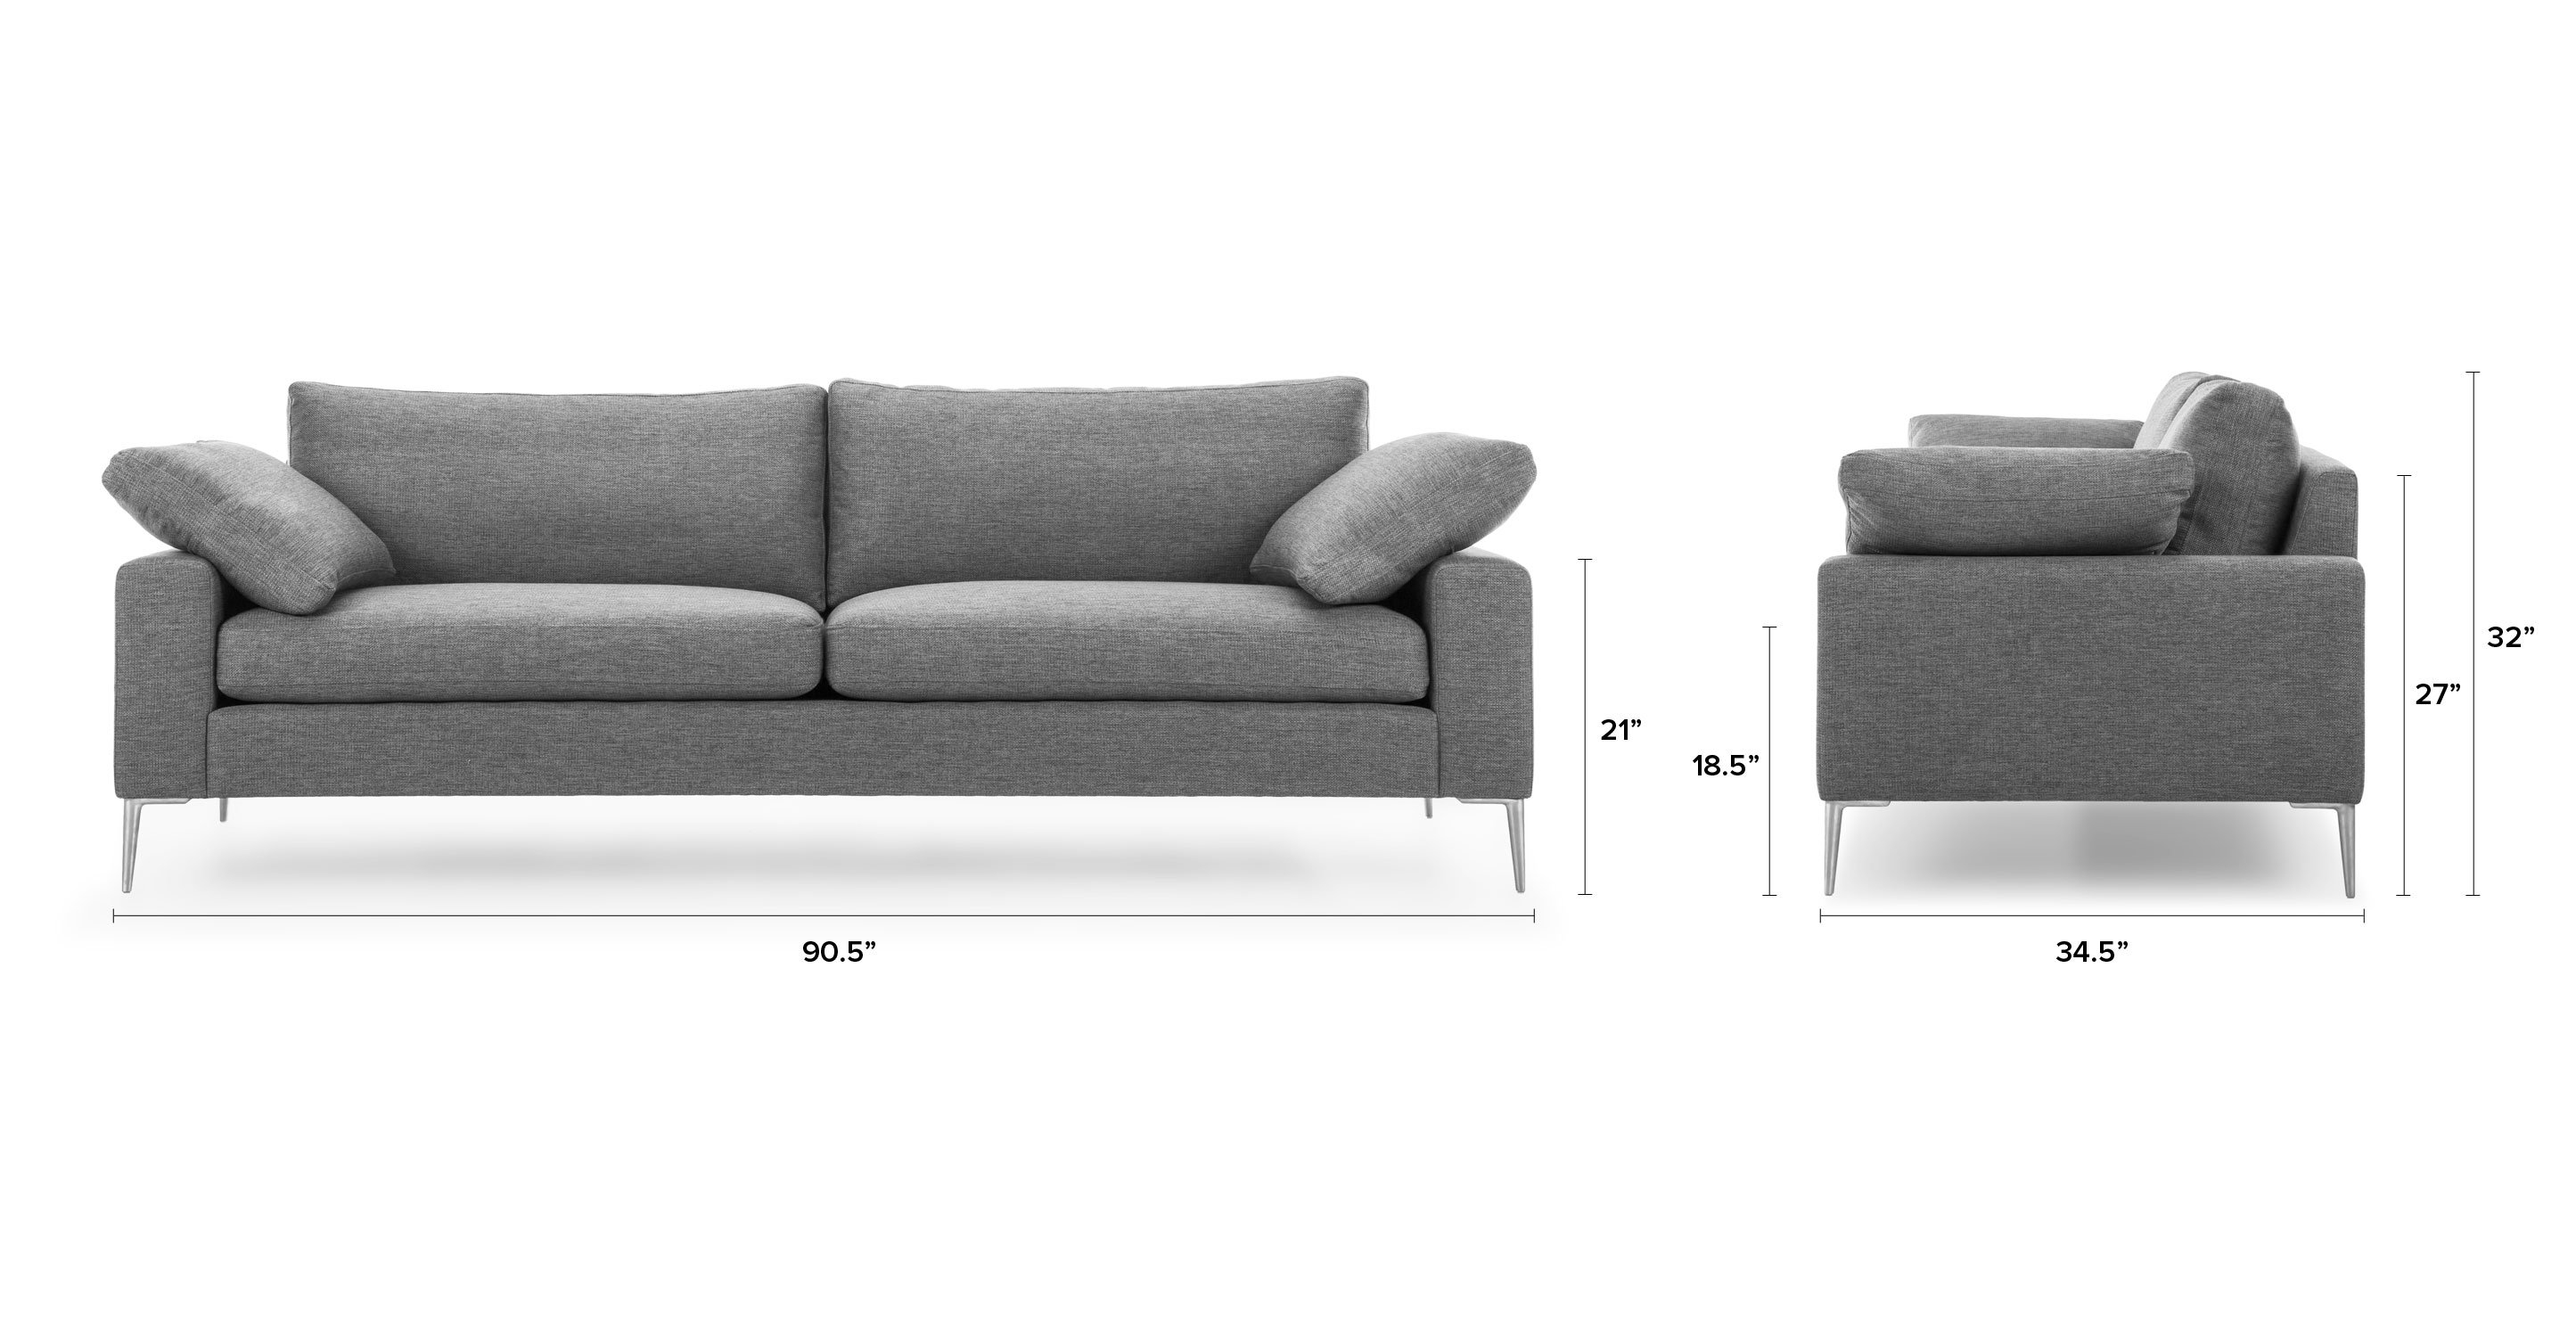 Nova 90.5" Sofa - Gravel Gray - Image 0